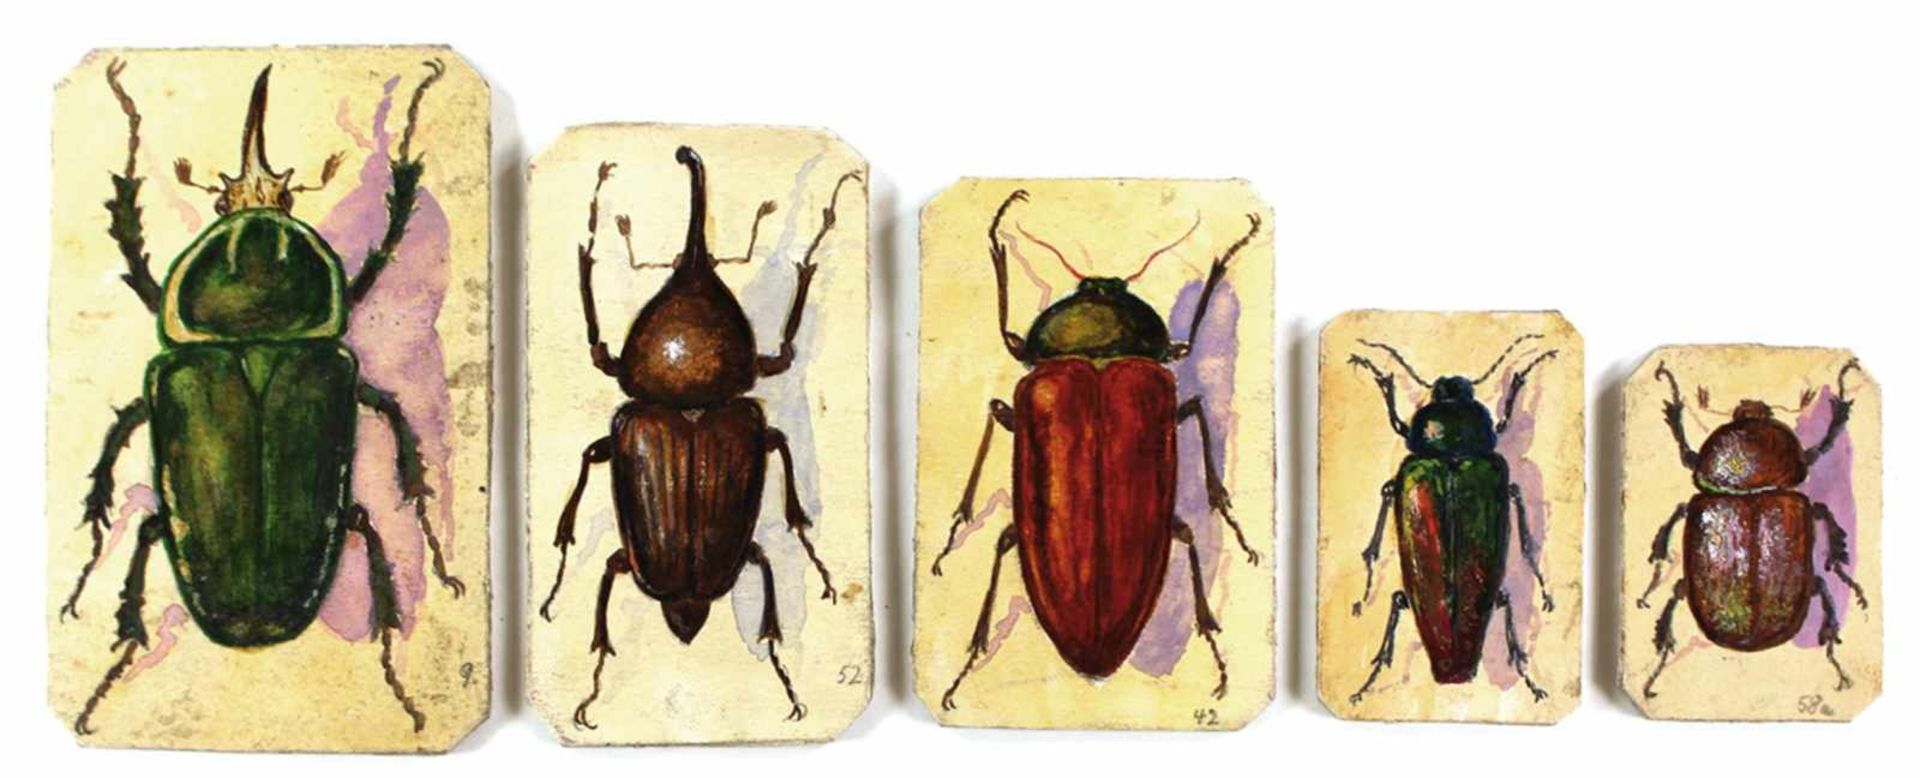 Käfer.Sammlung v. 16 Darst. v. Käfern, verso m. ihren zoolog. Bez. Jew. num. in einer